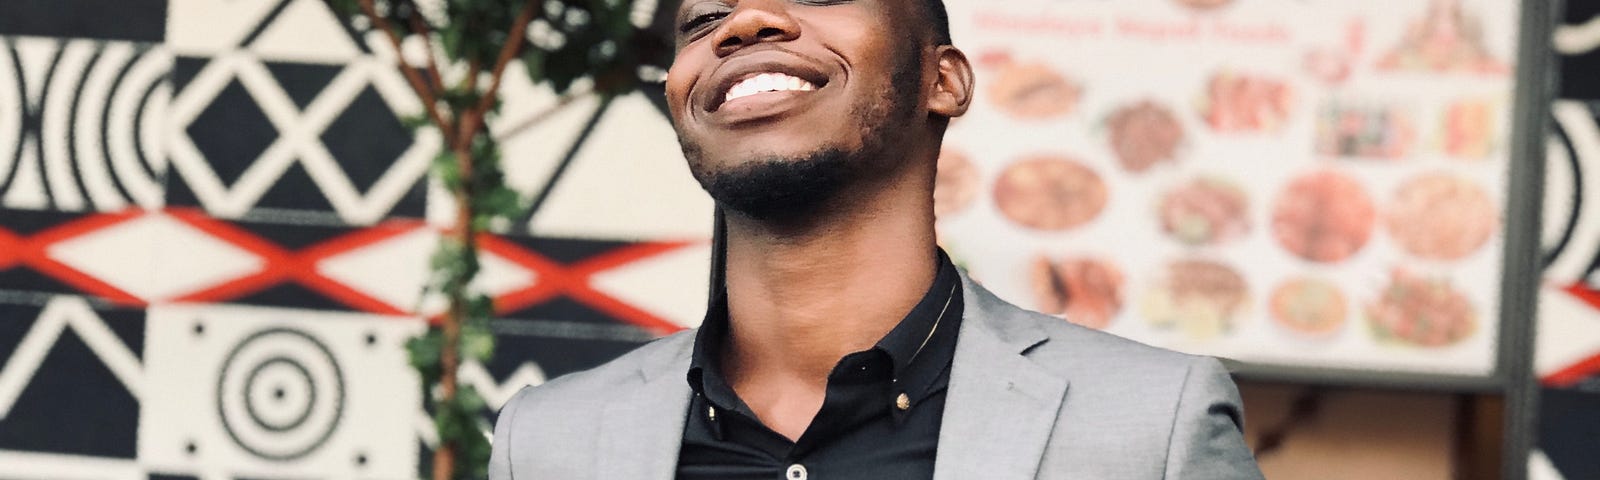 MANDELA IN KAMPALA 2019